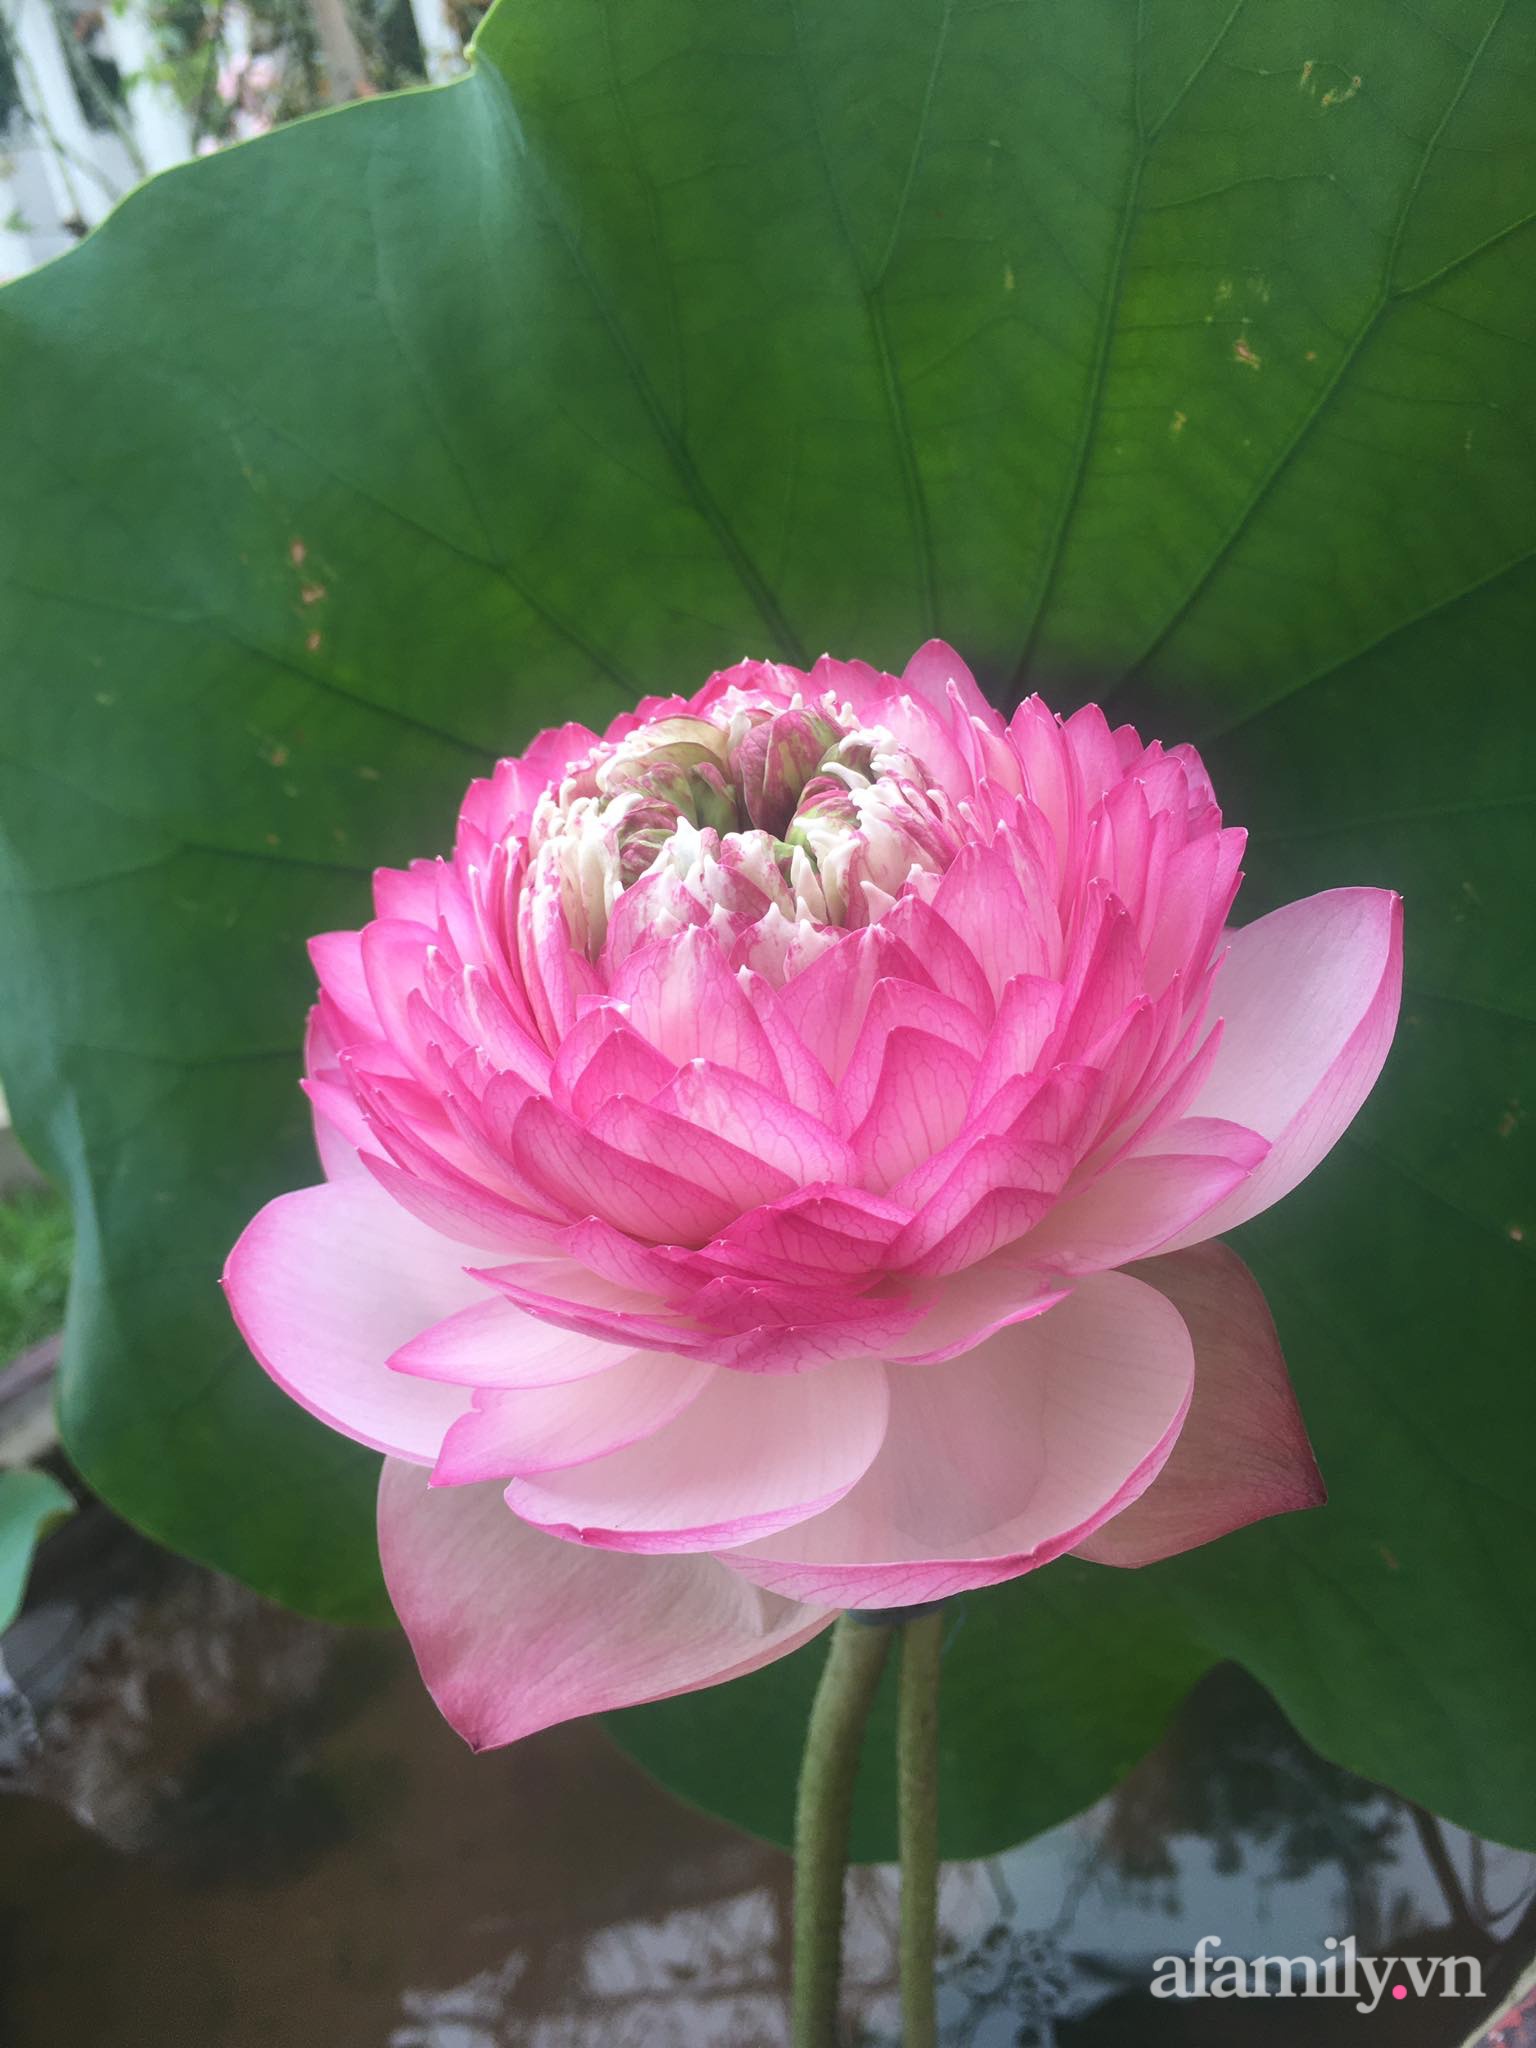 Vườn hoa sen: Vườn hoa sen rực rỡ sắc màu này sẽ khiến trái tim bạn rung động. Hãy đắm chìm trong khung cảnh tuyệt đẹp này và cảm nhận vẻ đẹp của hoa sen từng bông.